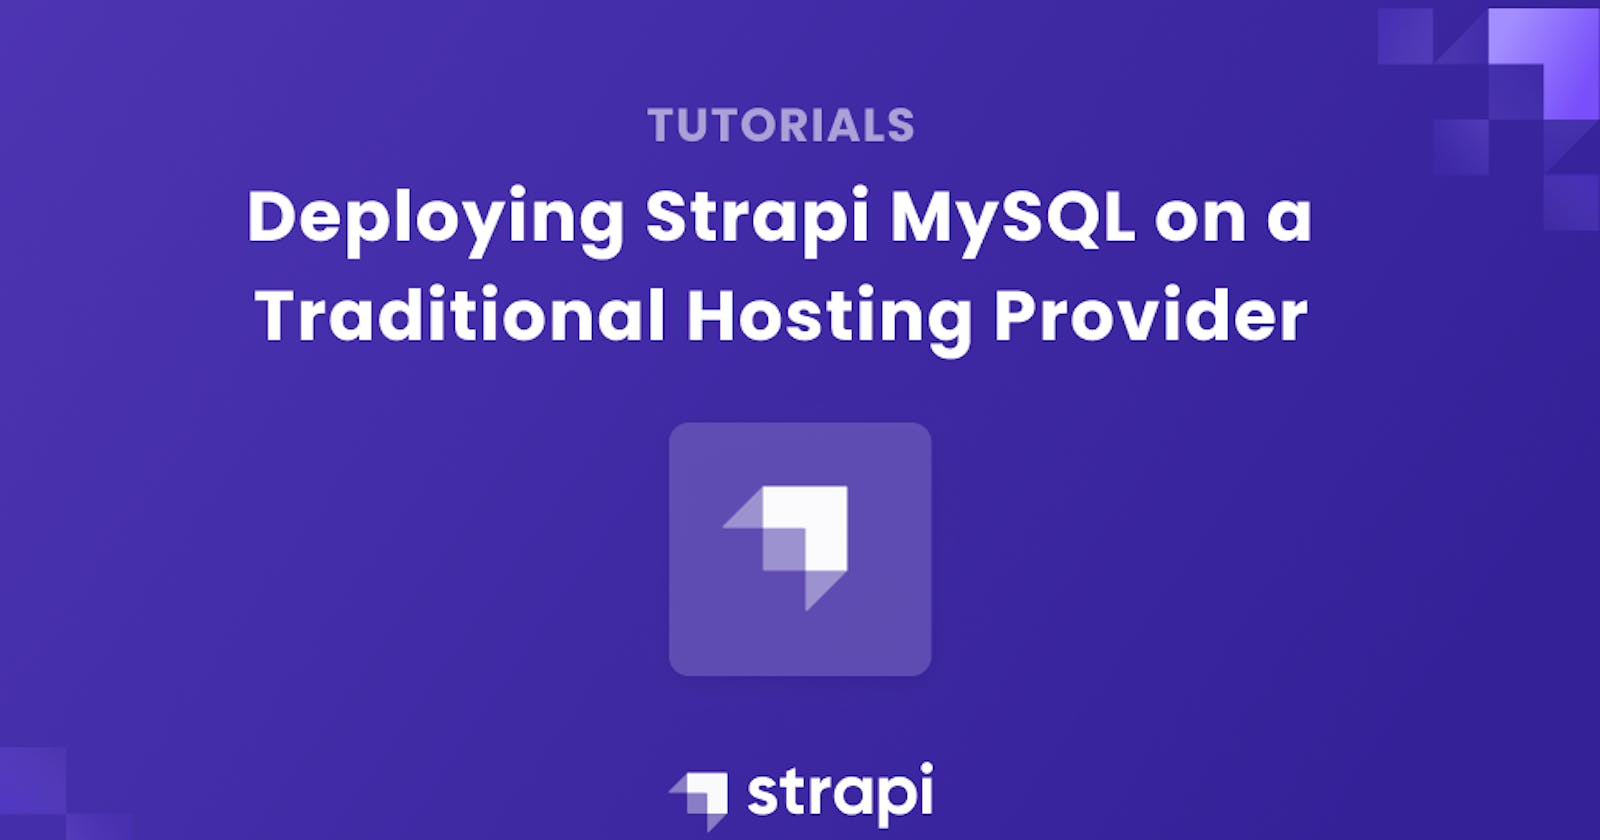 Deploying Strapi MySQL on a Traditional Hosting Provider